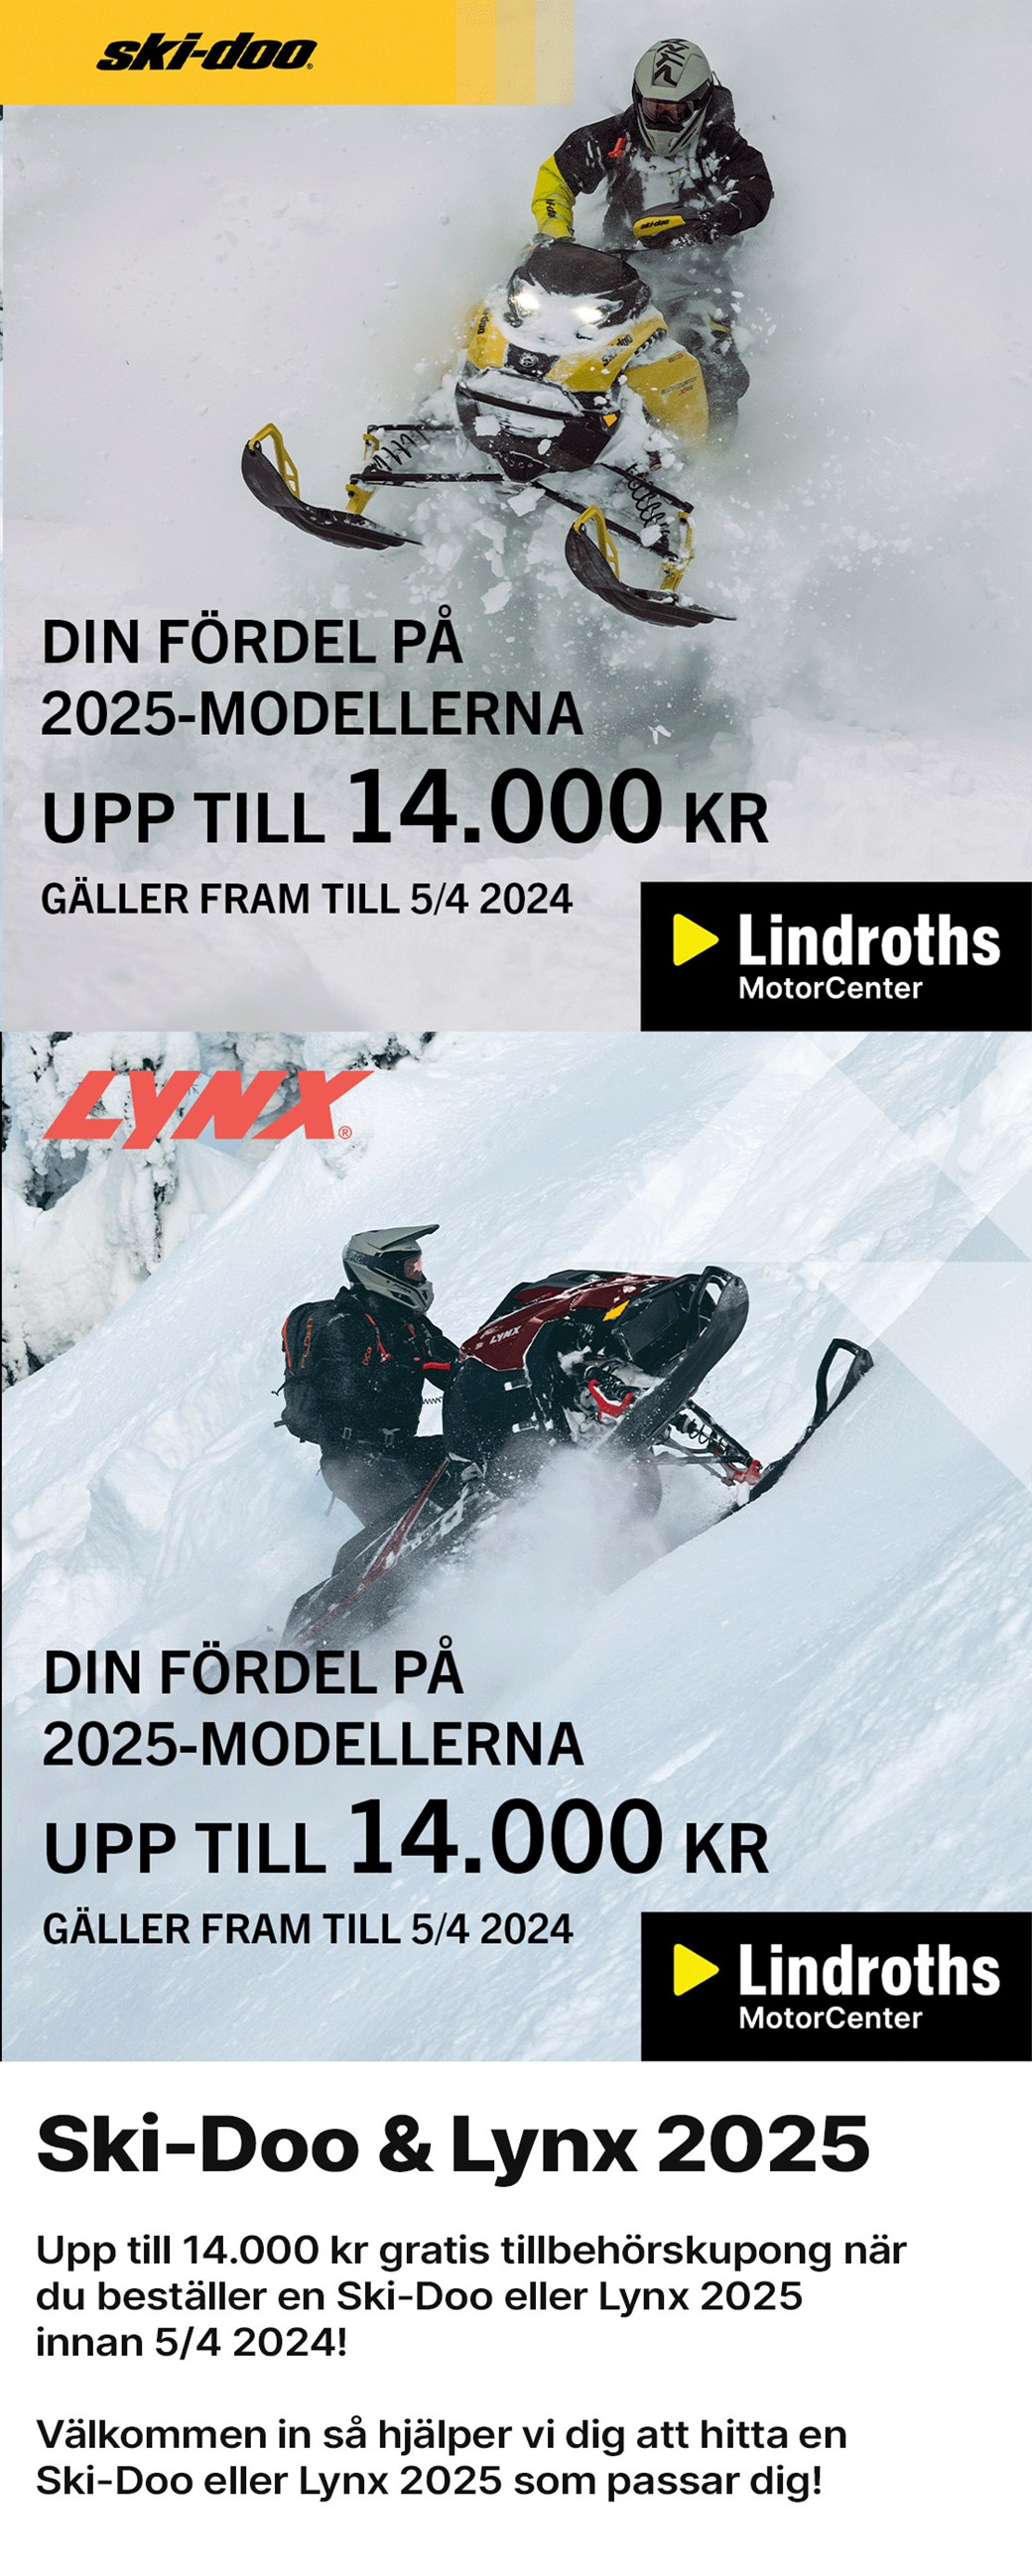 Ski-Doo & Lynx 2025